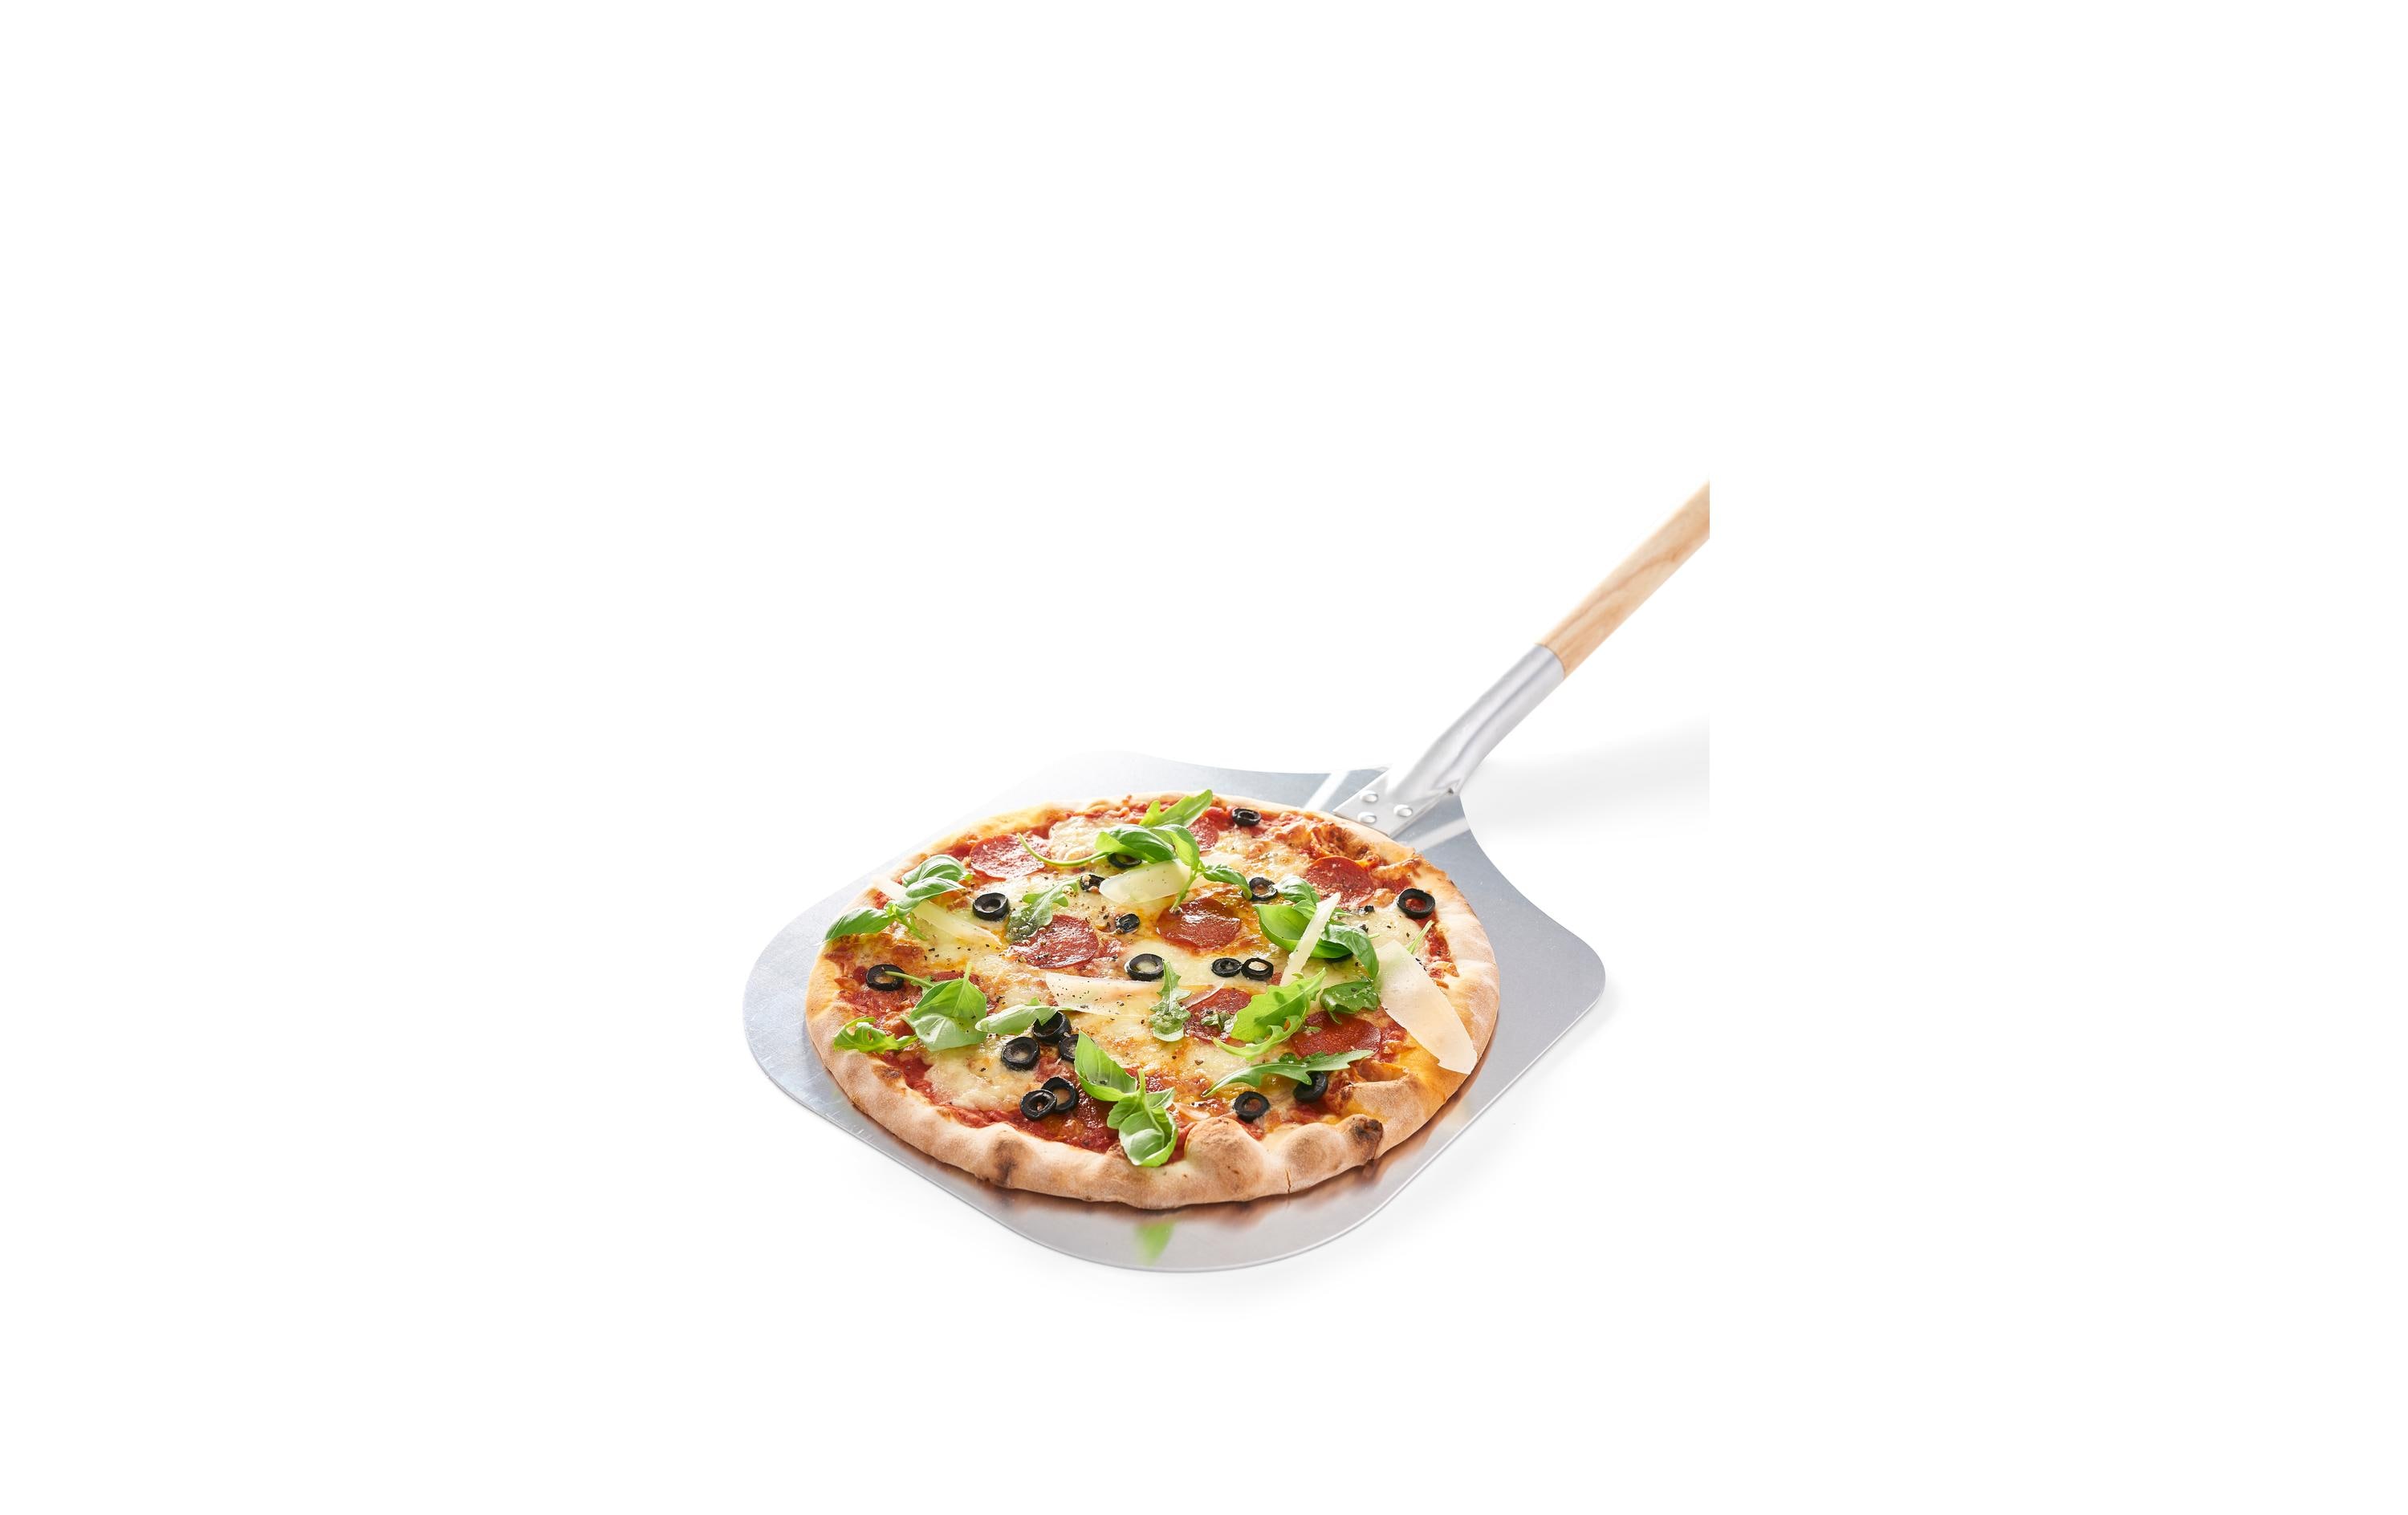 Dangrill Pizzaschaufel mit Holzgriff, 65 x 30 cm, Silber